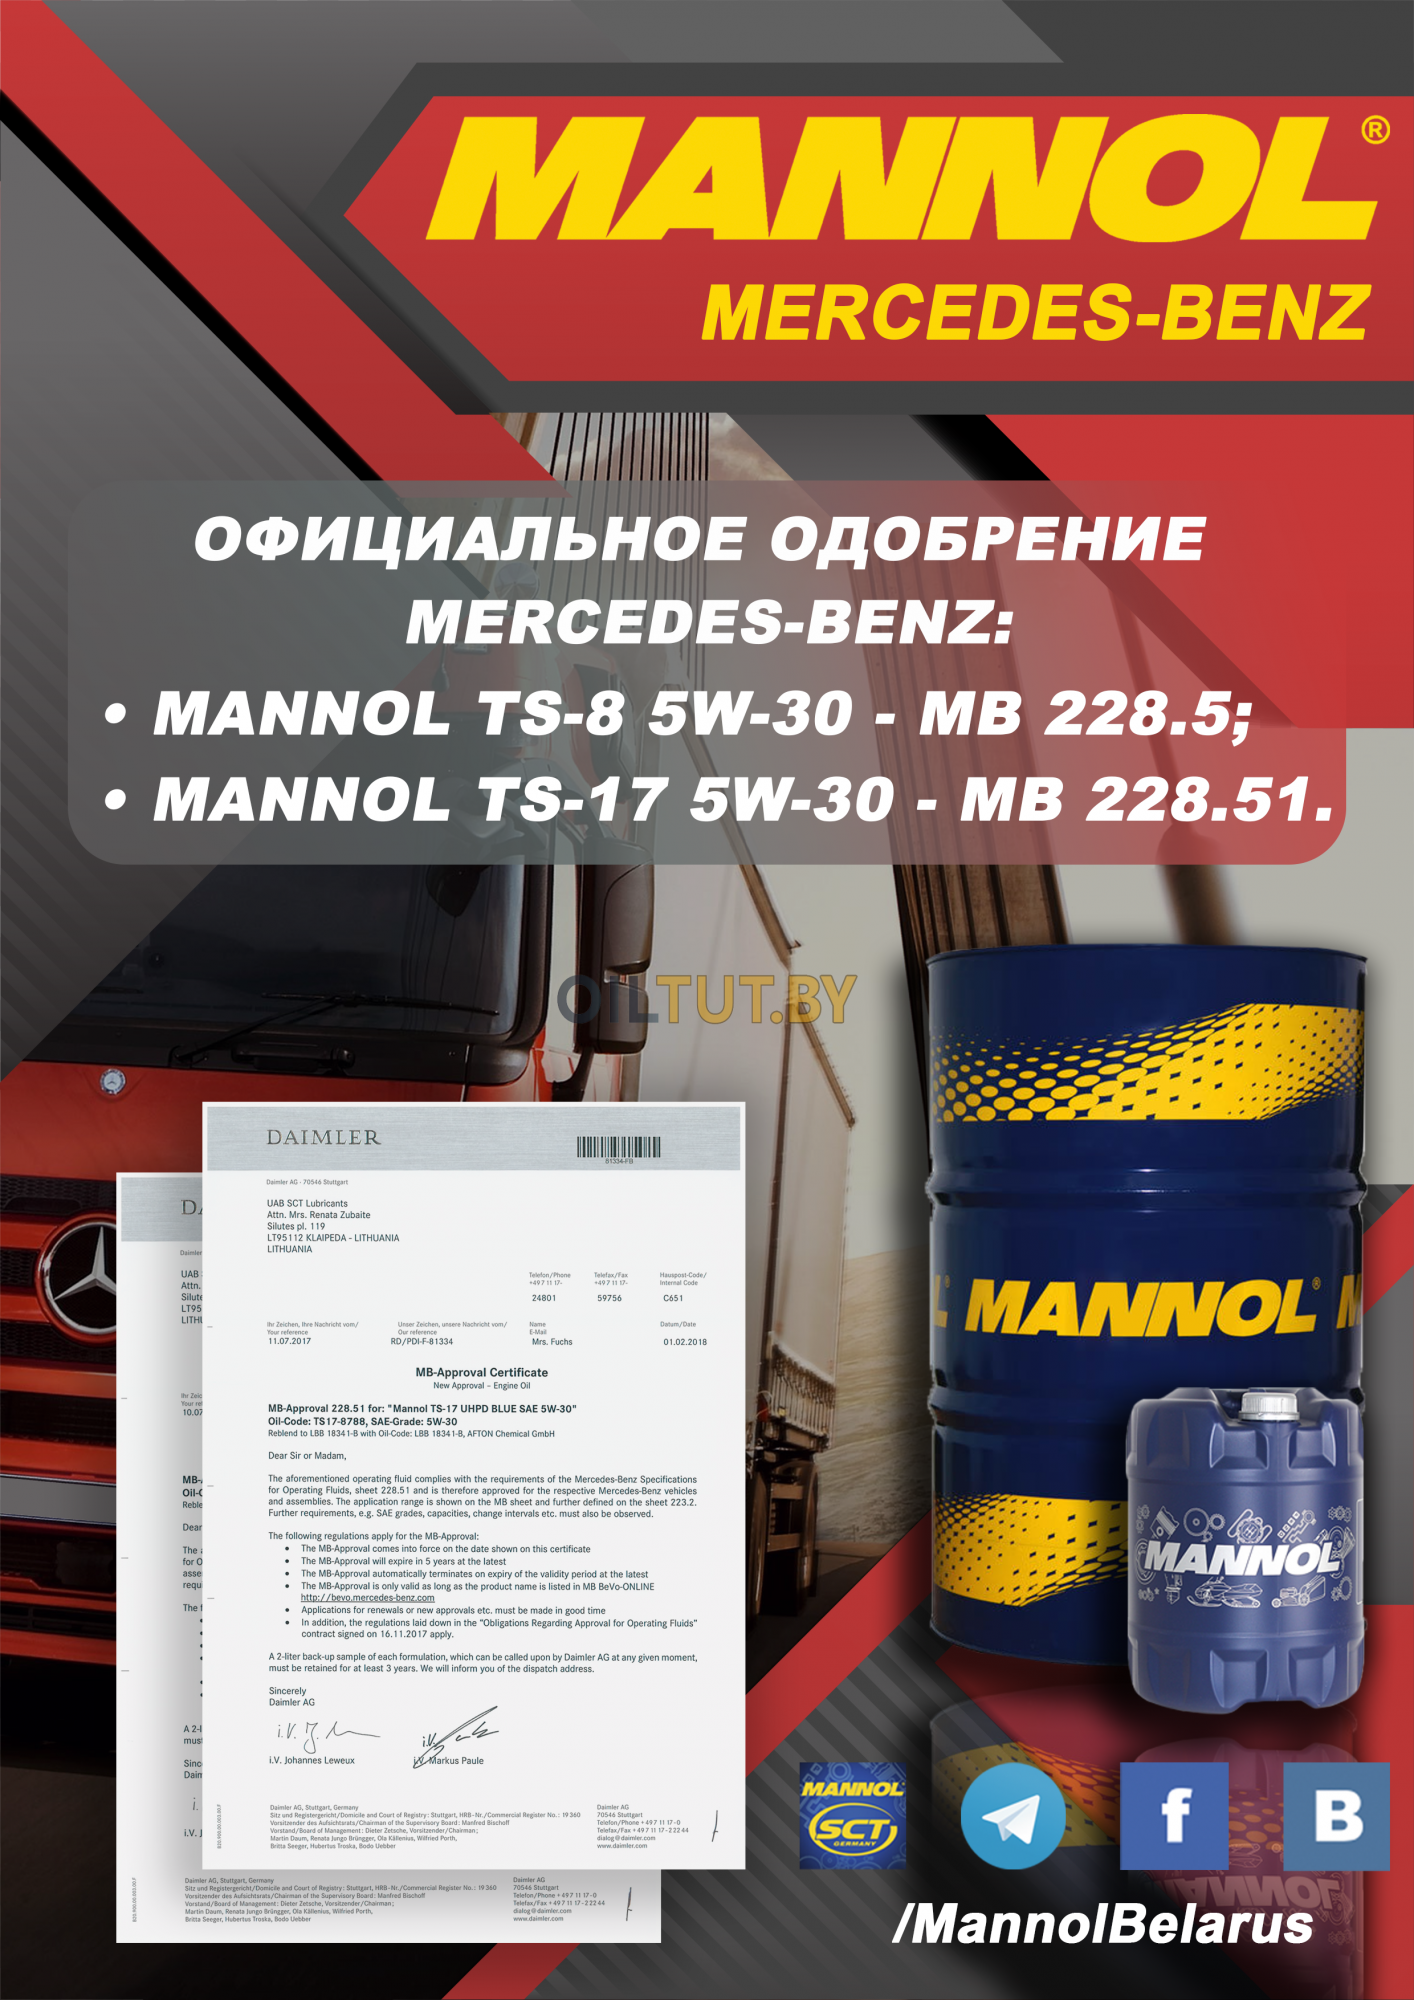 Получен официальный допуск на продукцию Mannol TS-8 / TS-17